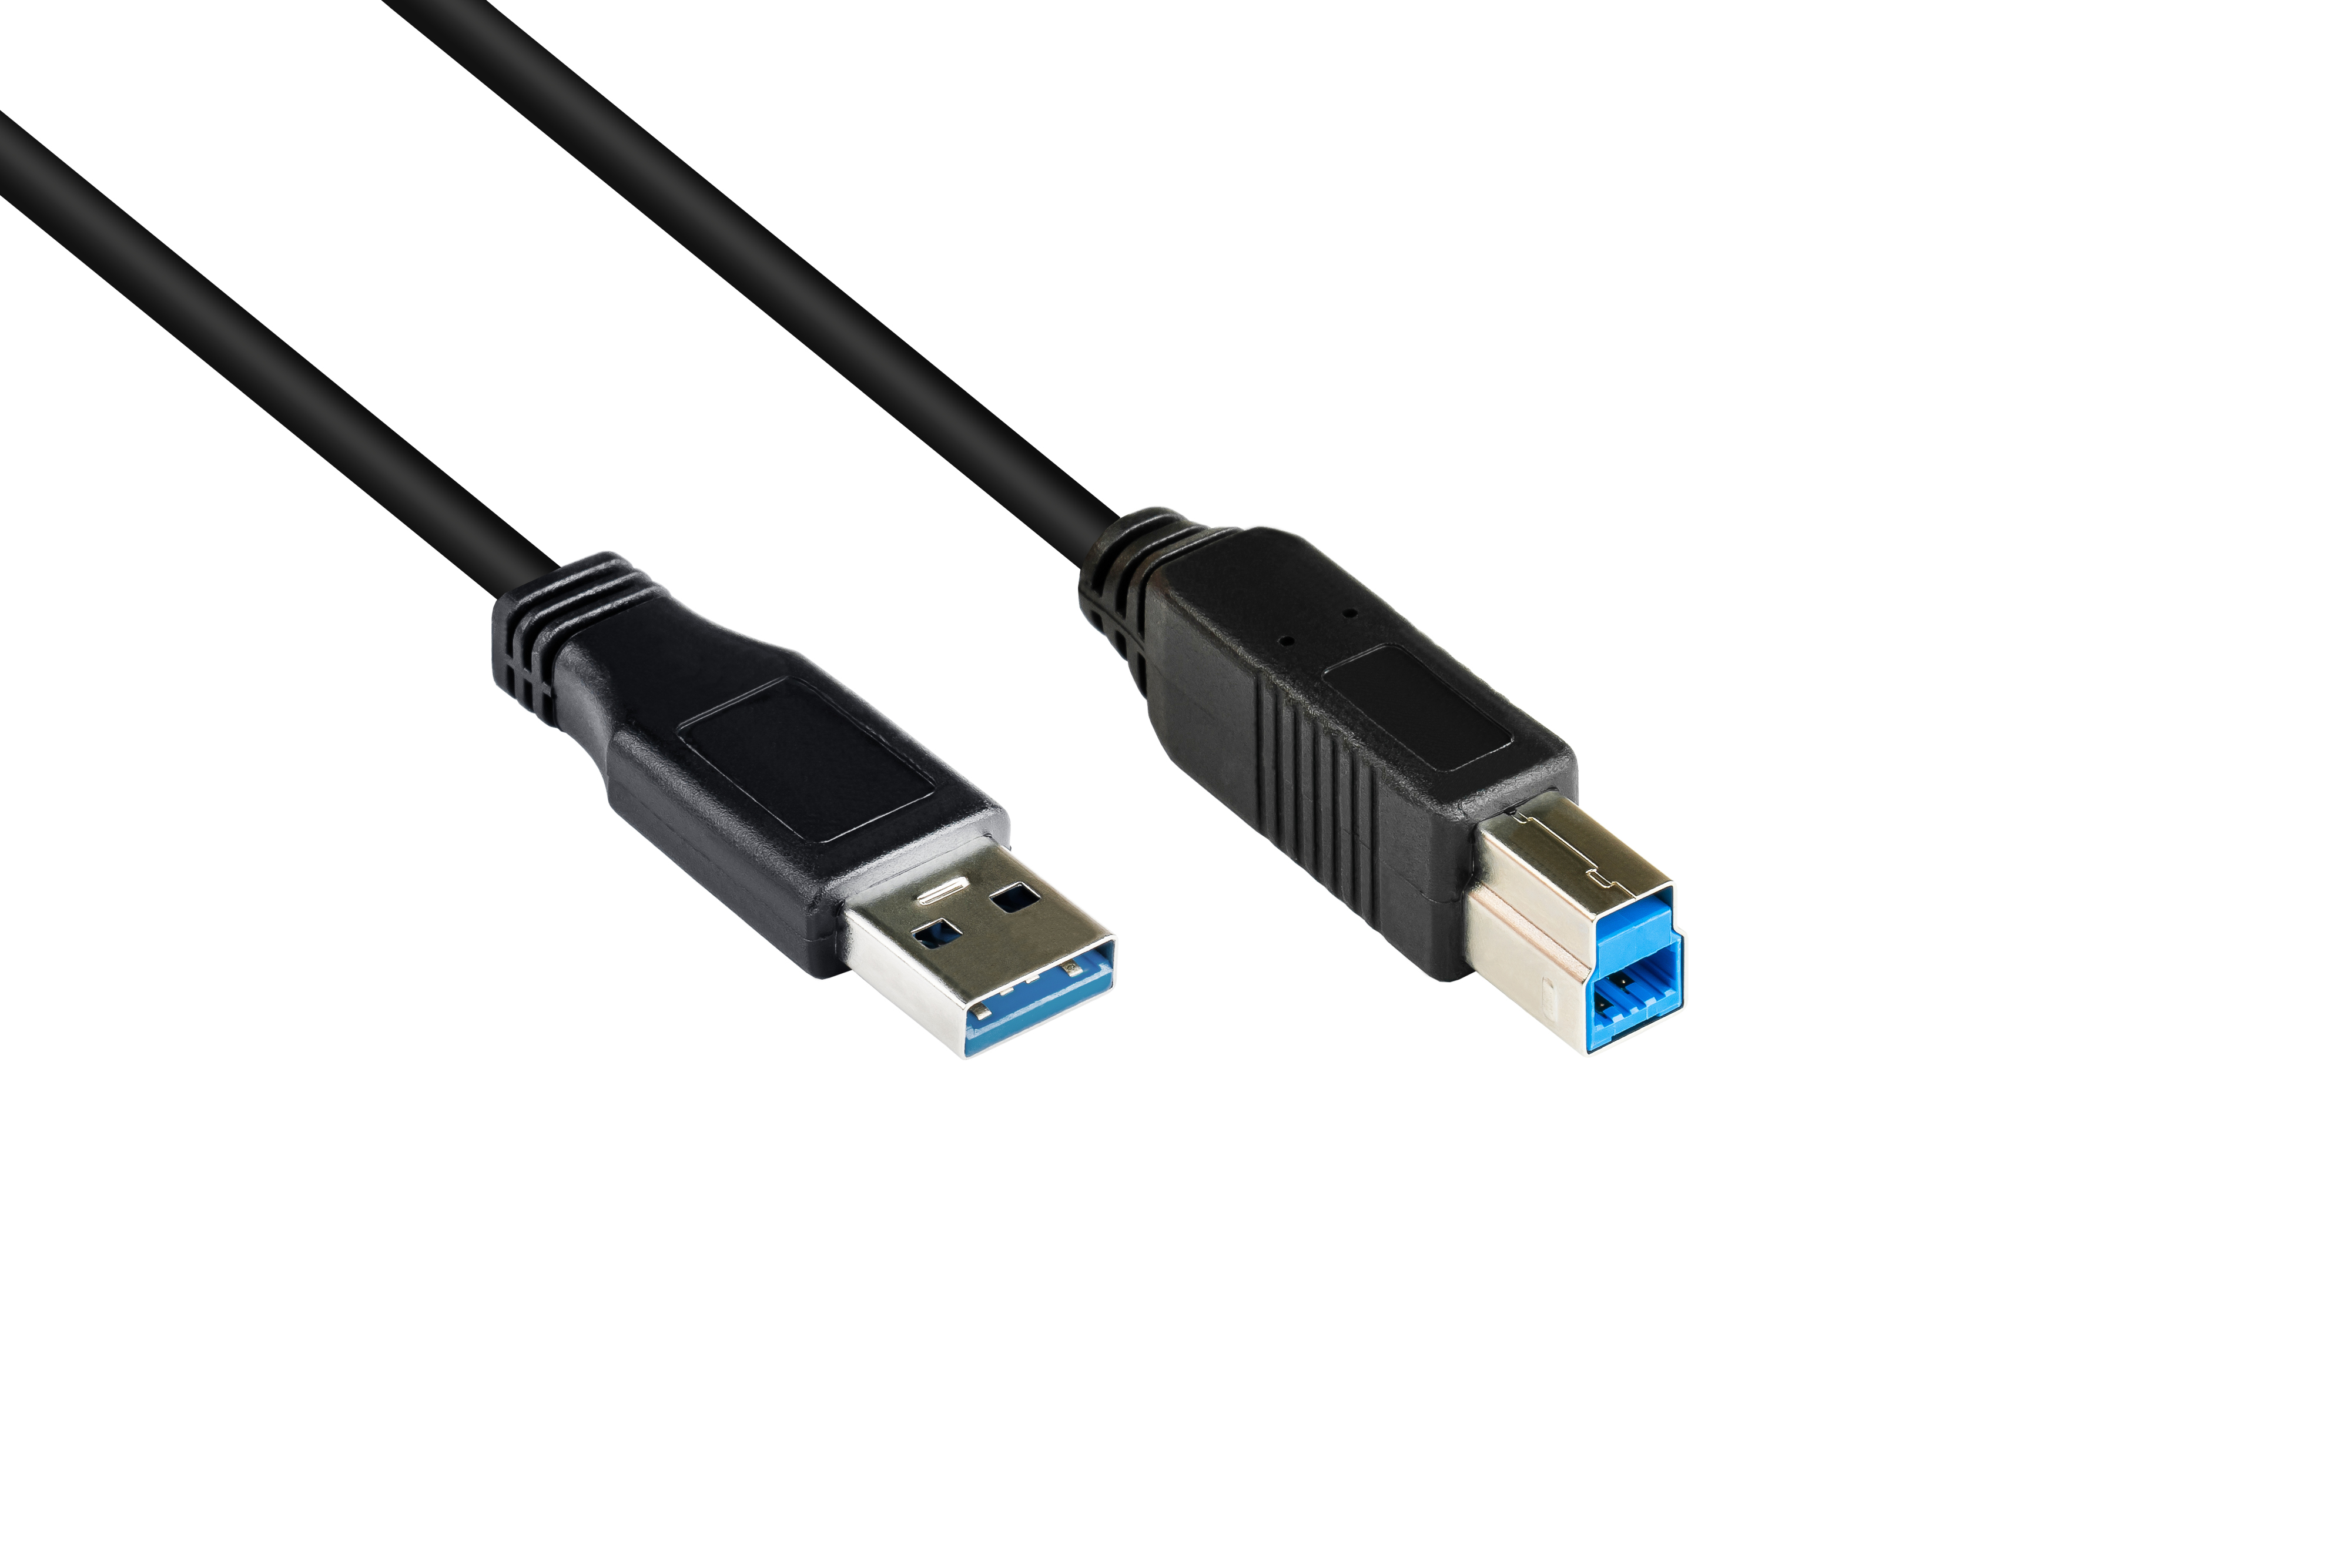 B, GOOD Stecker 3.0 Stecker CONNECTIONS A an schwarz Anschlusskabel USB